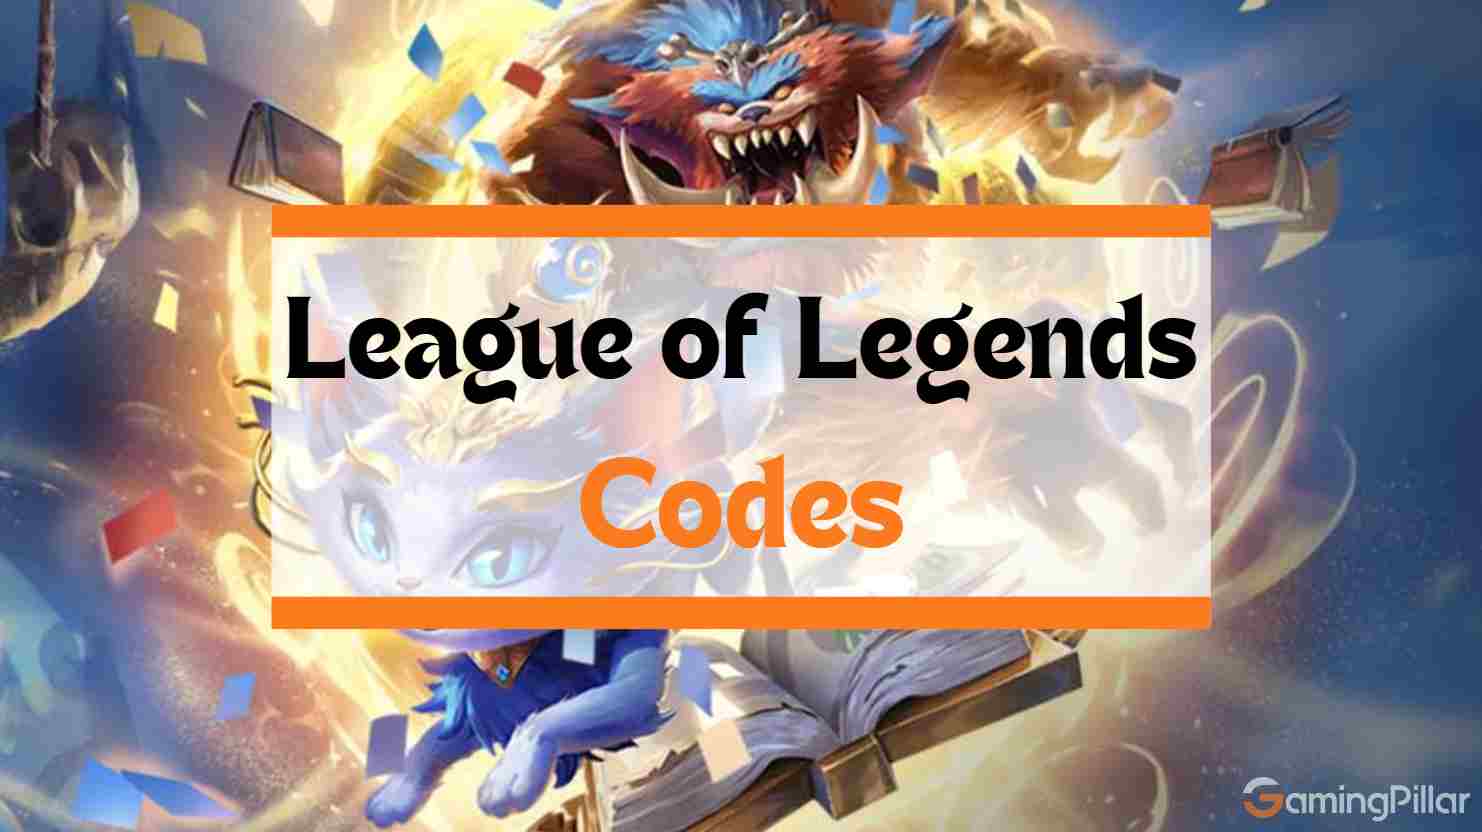 League of Legends Codes